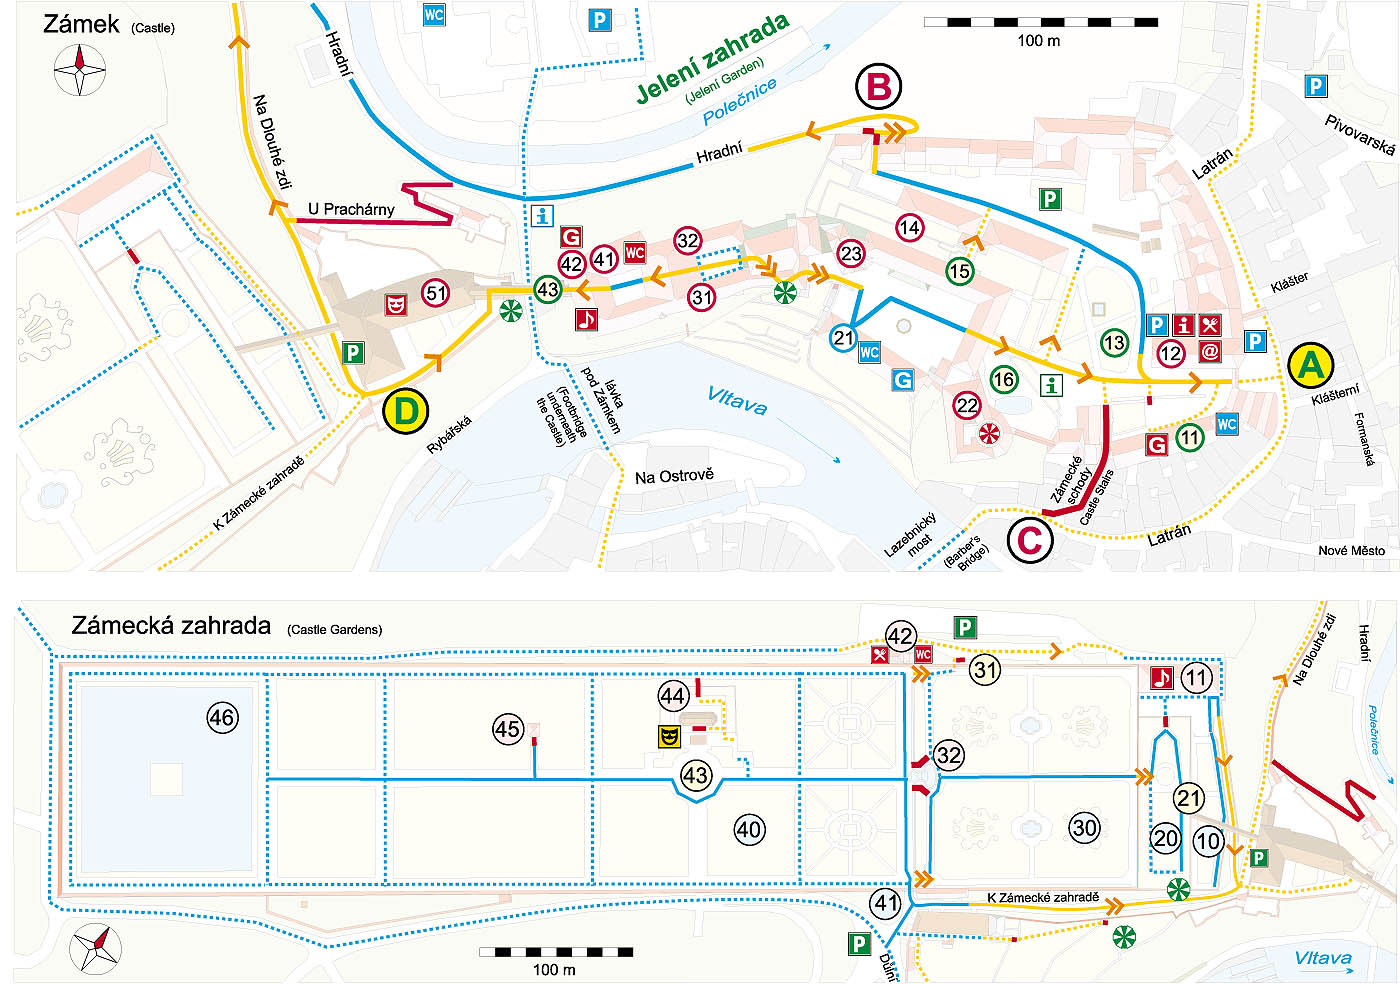 Český Krumlov: A Guide for Handicapped and Other Visitors, Map of the Český Krumlov Castle